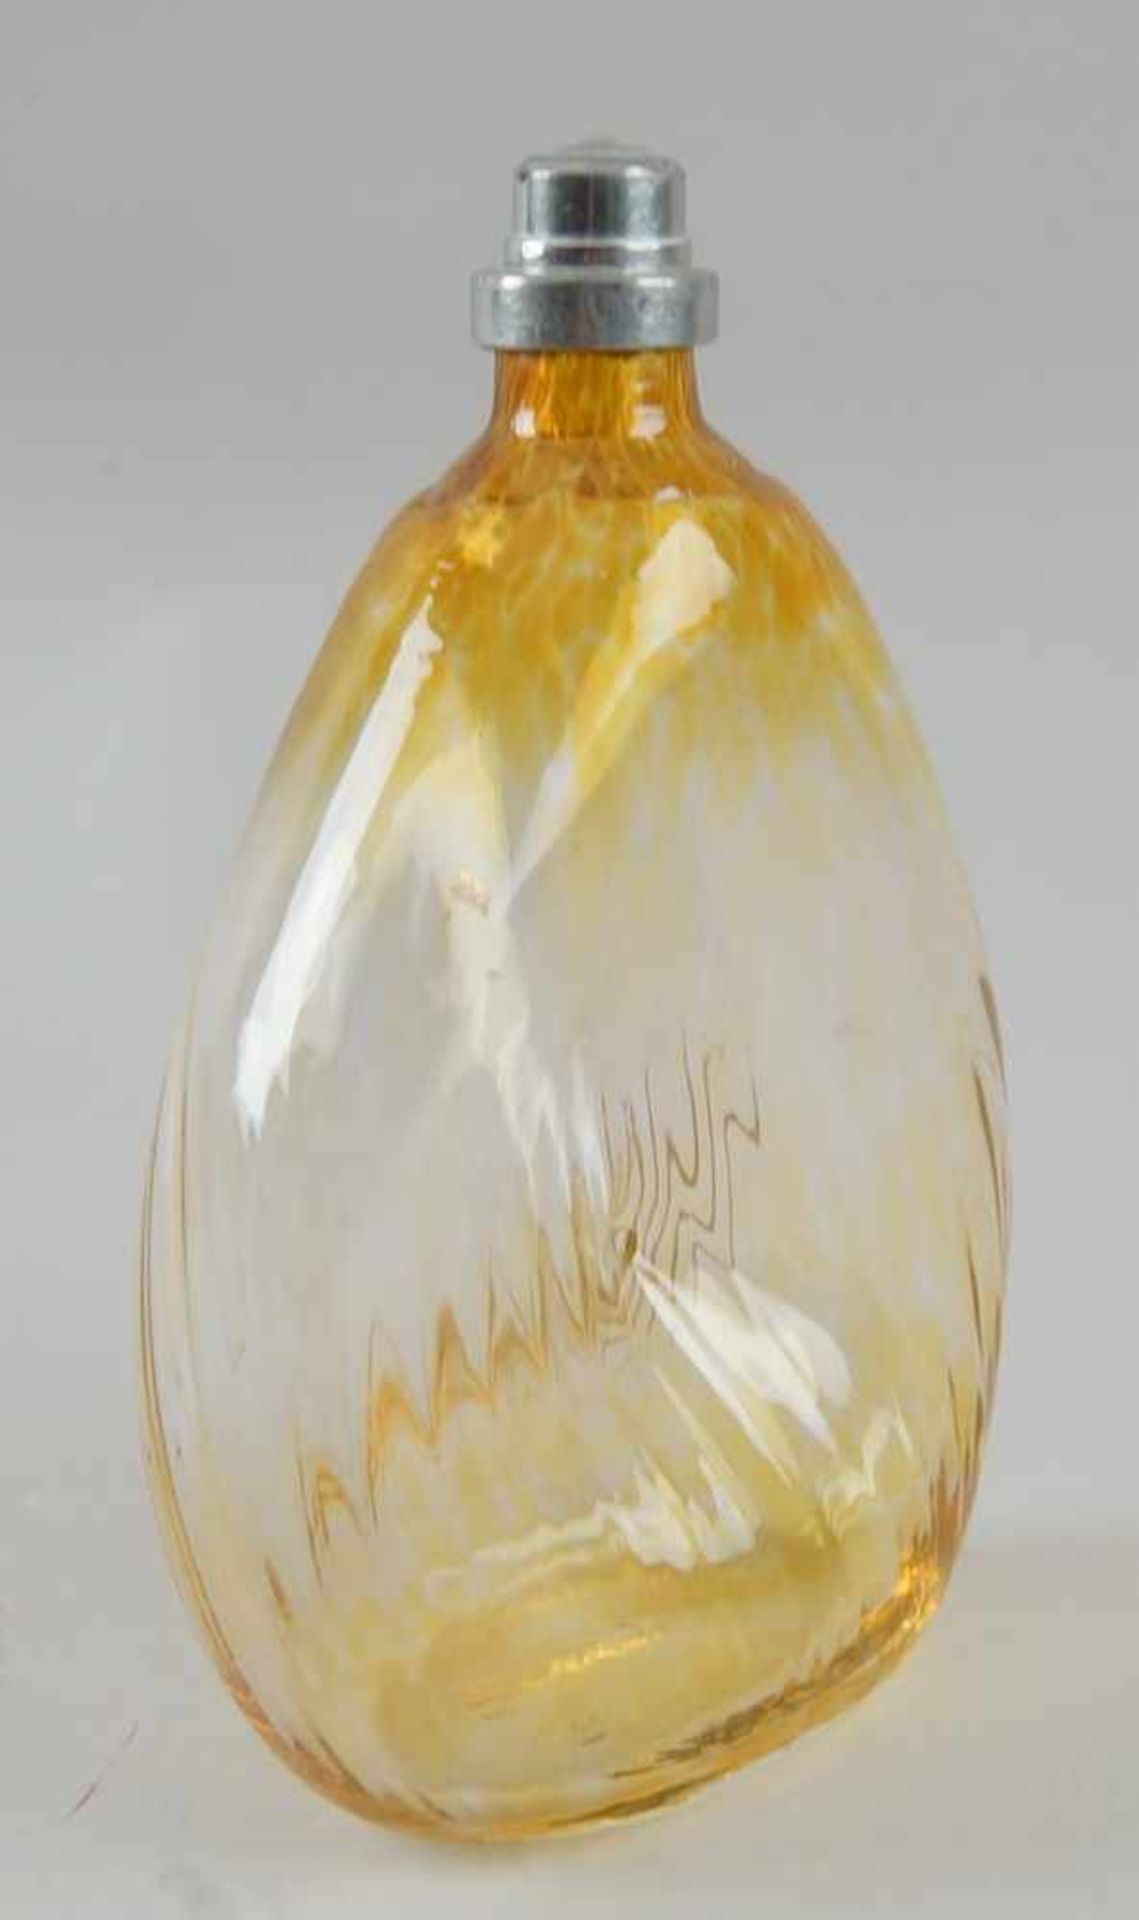 Gramsacher Nabelflasche, Tirol, ~ 1900, gelbliches Glas, H 18 cm - Bild 5 aus 7